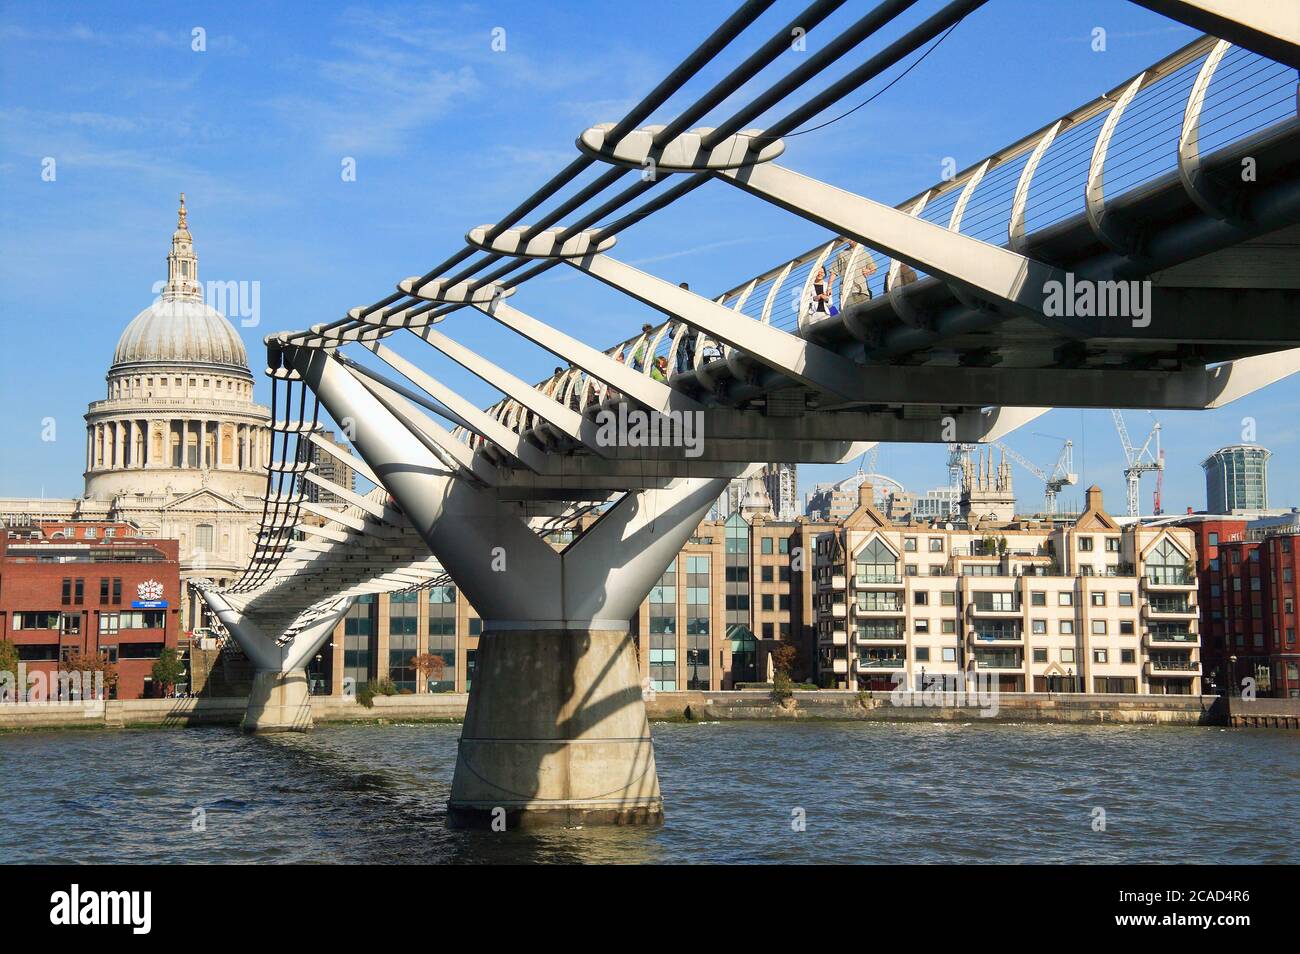 Londra, UK, 11 ottobre 2008 : il ponte pedonale del London Millennium che è un ponte sospeso in acciaio che collega Bankside con la Cattedrale di St Paul e la Foto Stock